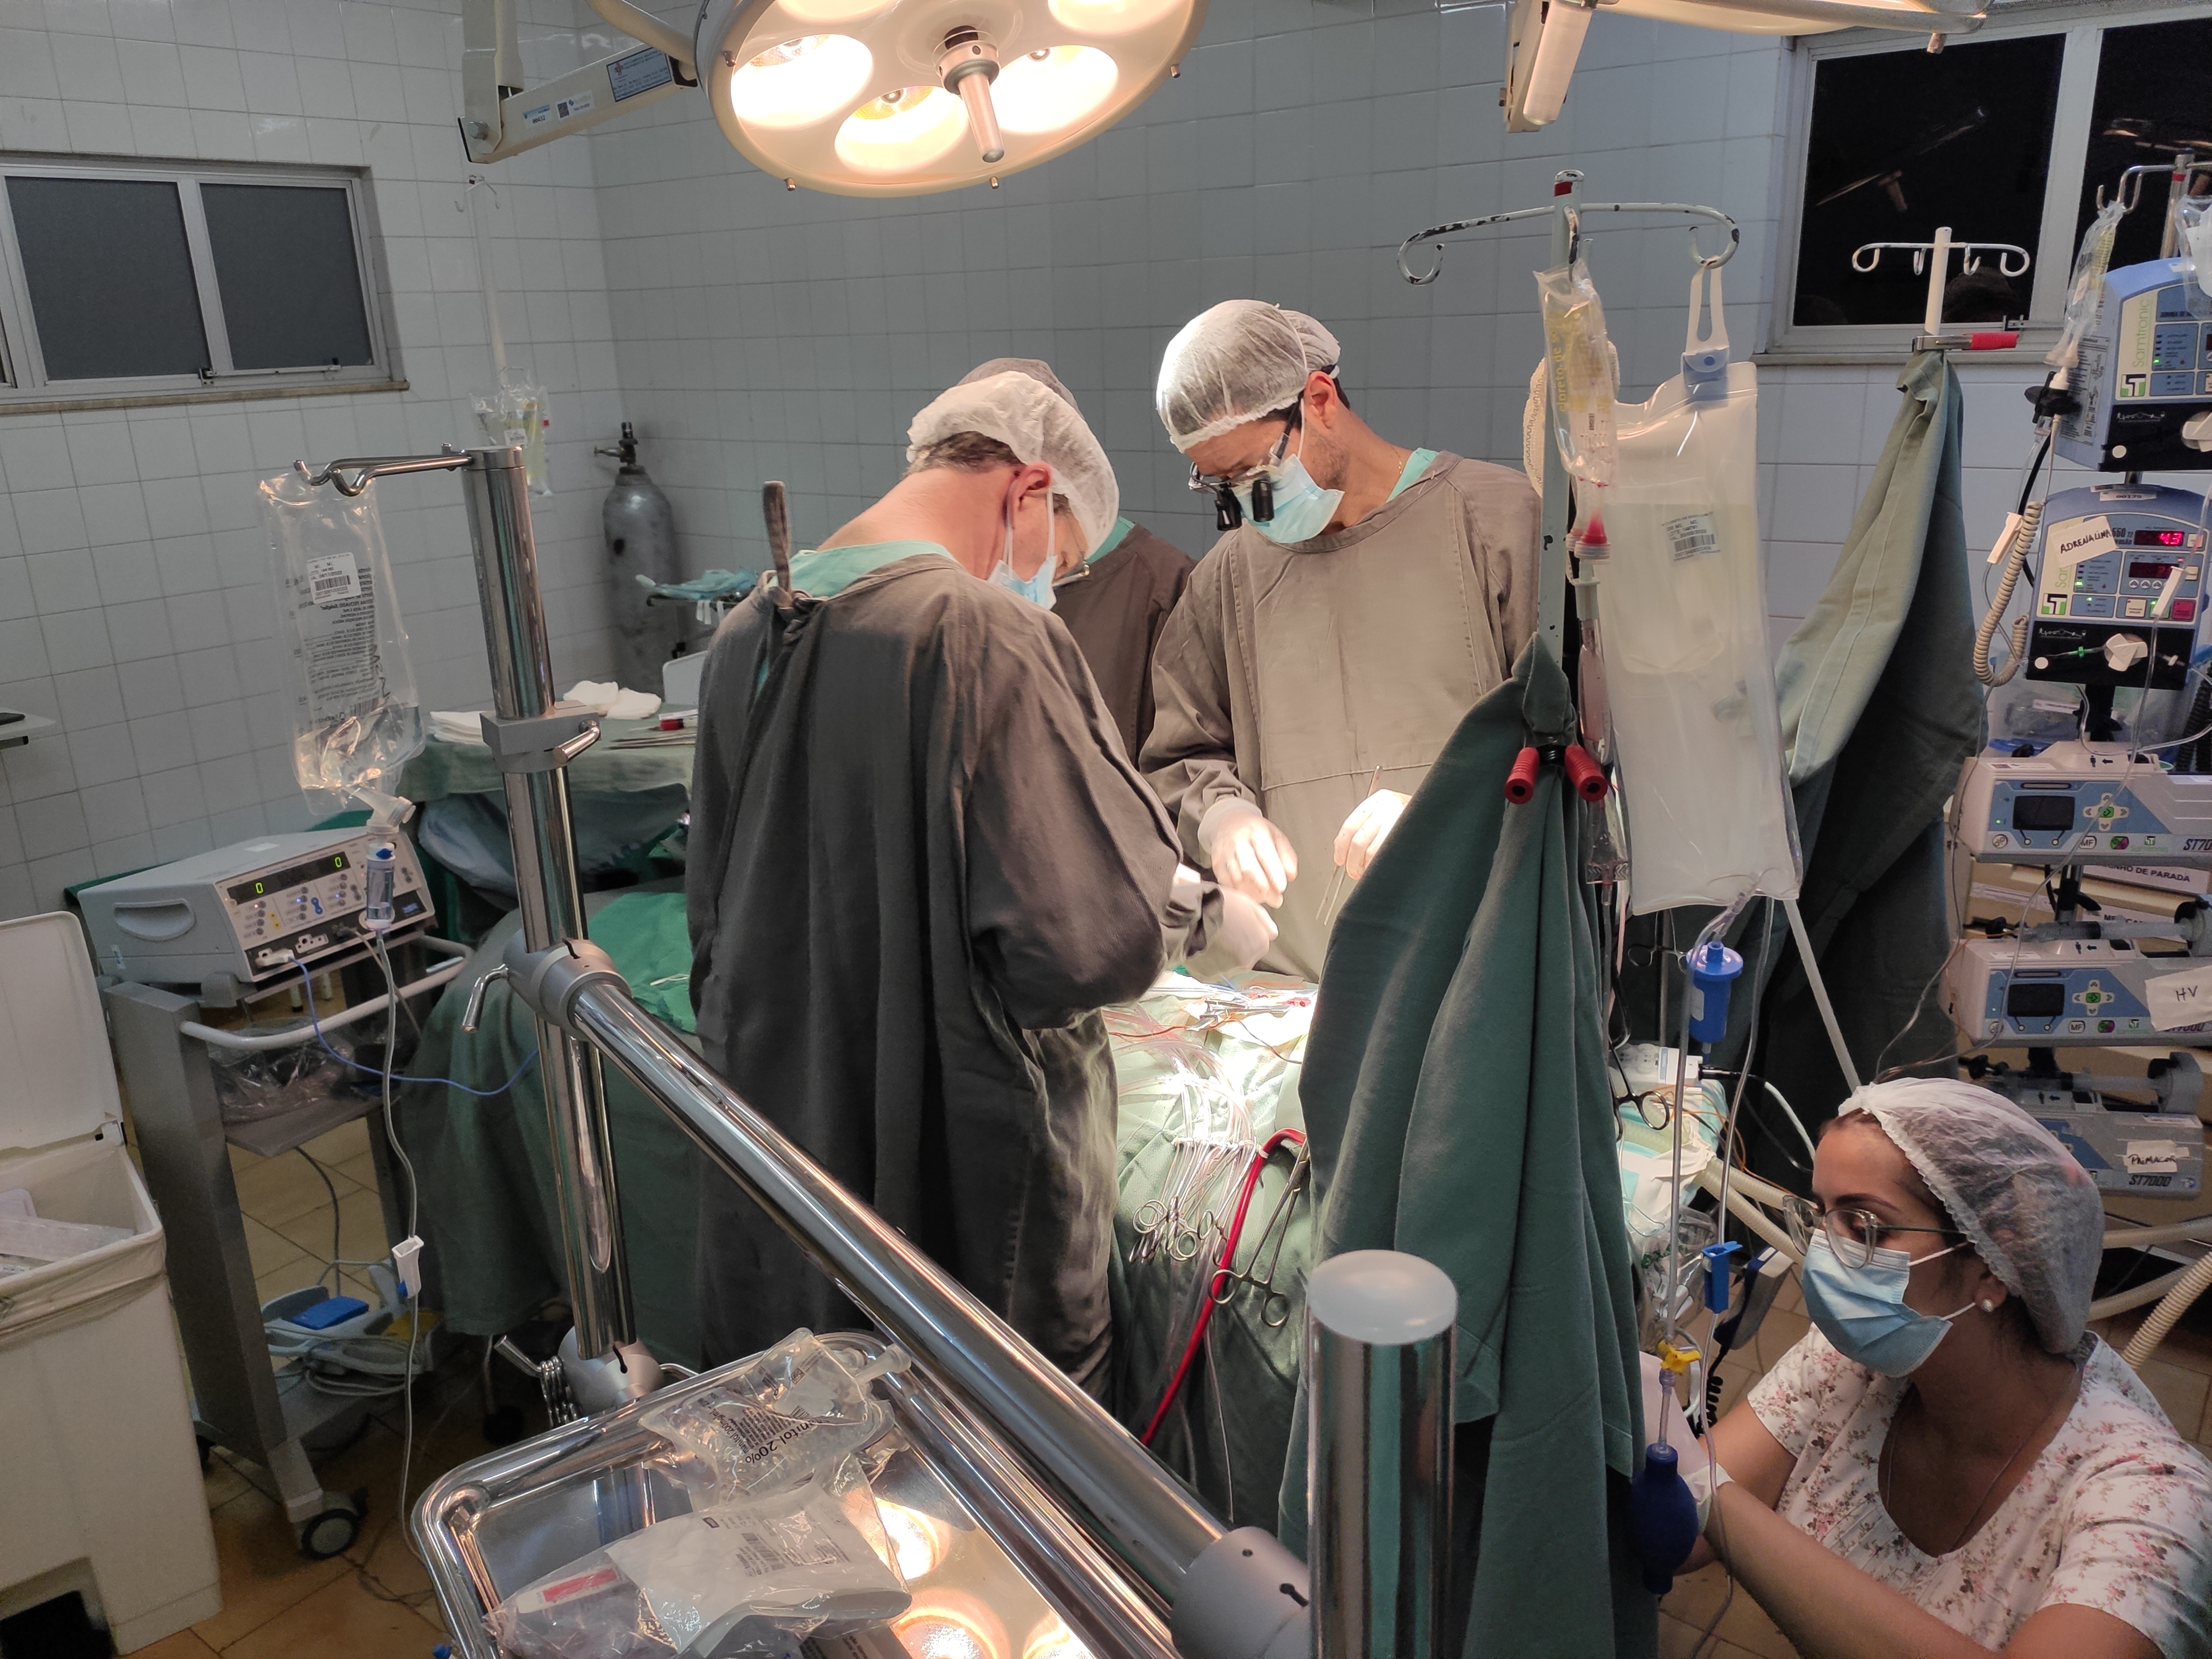 Imagem do centro cirúrgico e da equipe médica realizando procedimento na mesa de cirurgia.